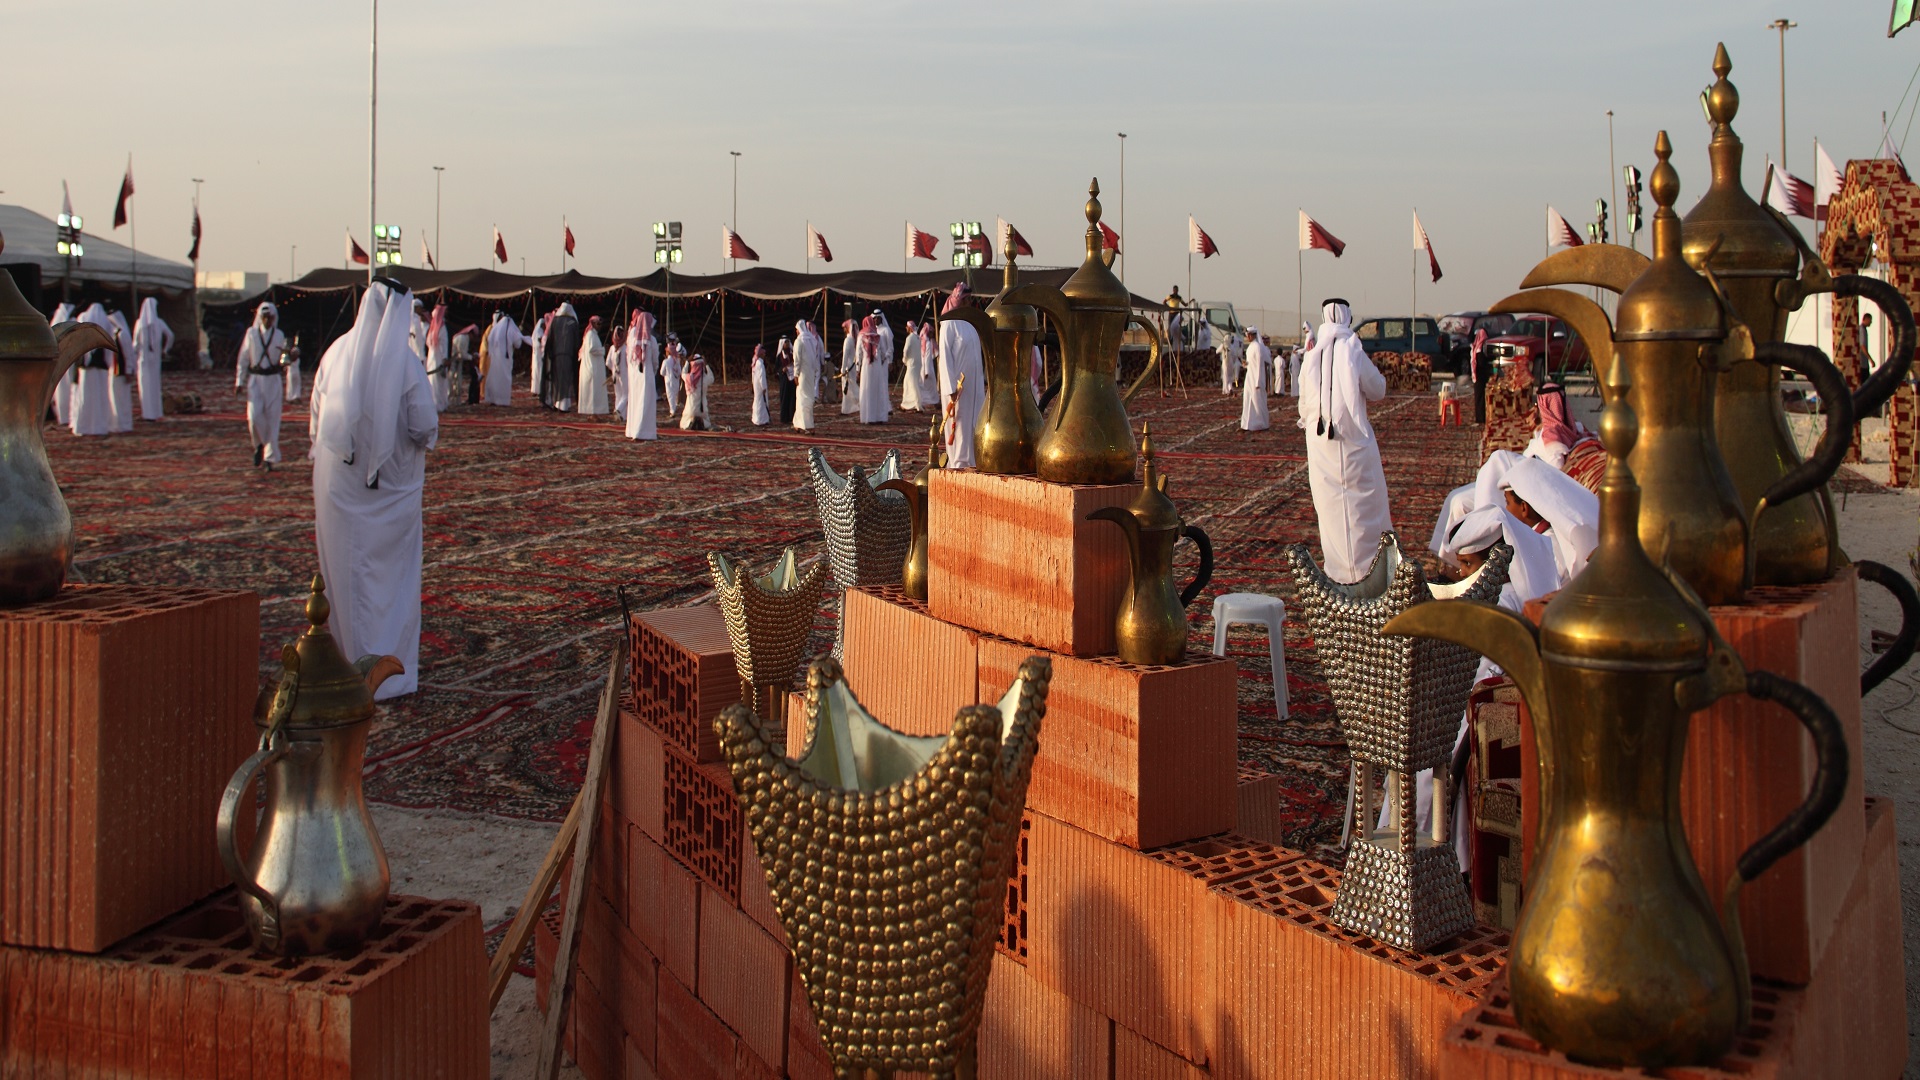 التراث الشعبي في قطر جزء لايتجزء من الهوية العربية للشعب القطري (السياحة القطرية)